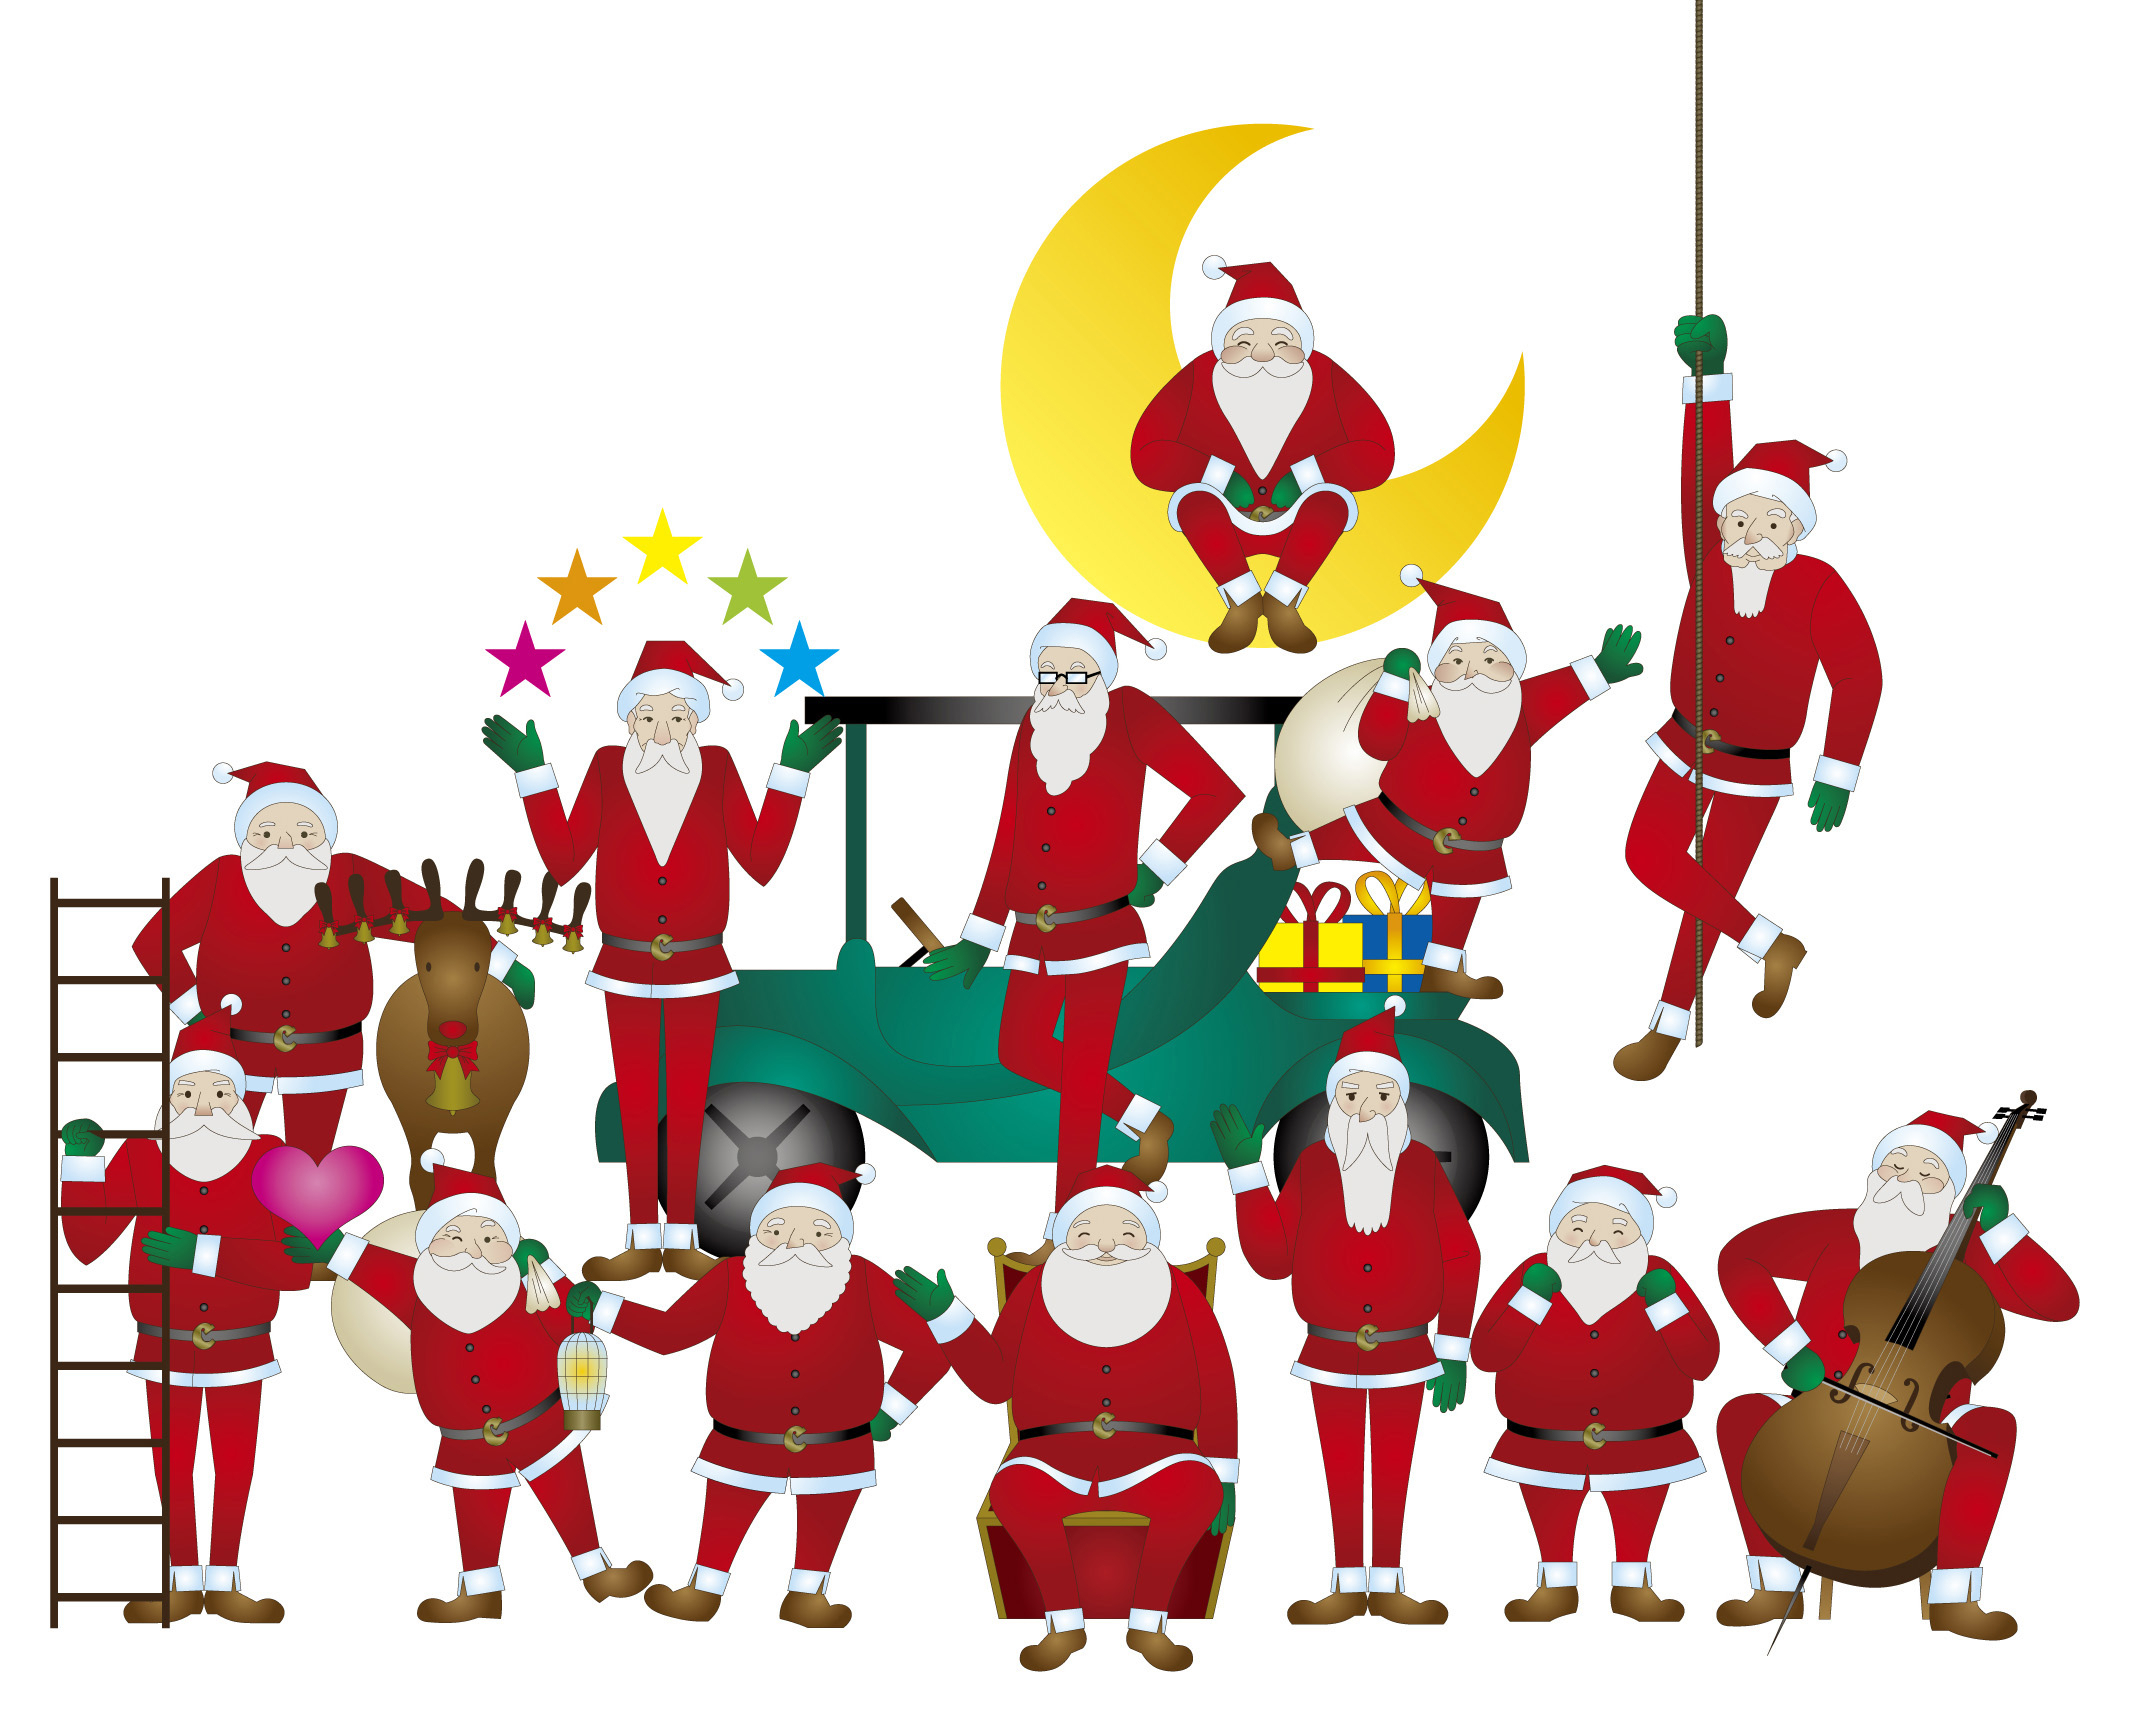 クリスマスカードに使える素材イラスト : 【60枚以上】サンタクロース素材イラストまとめ! - NAVER まとめ